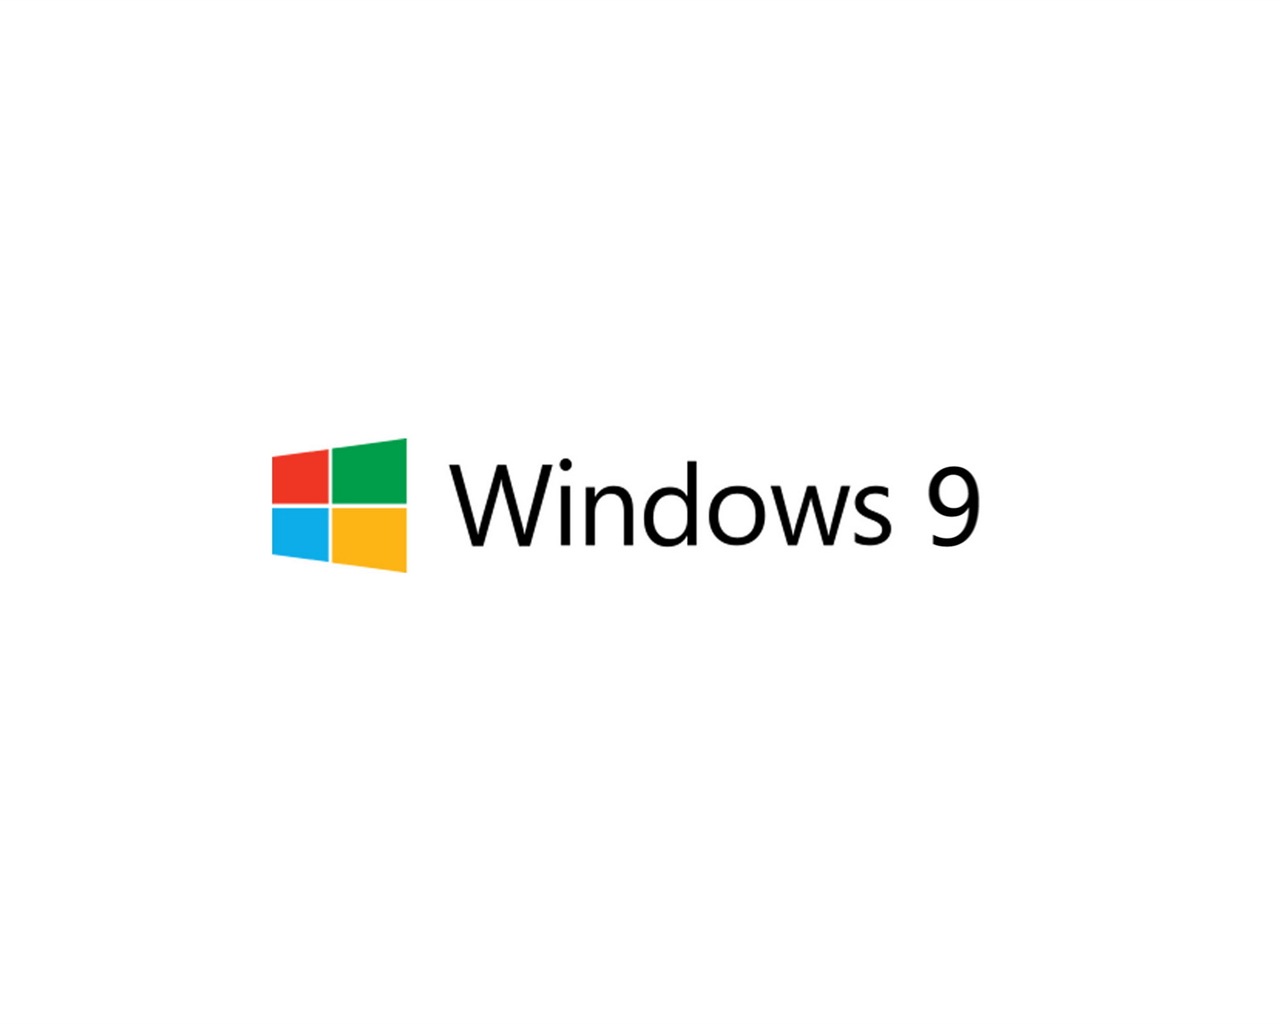 微软 Windows 9 系统主题 高清壁纸7 - 1280x1024